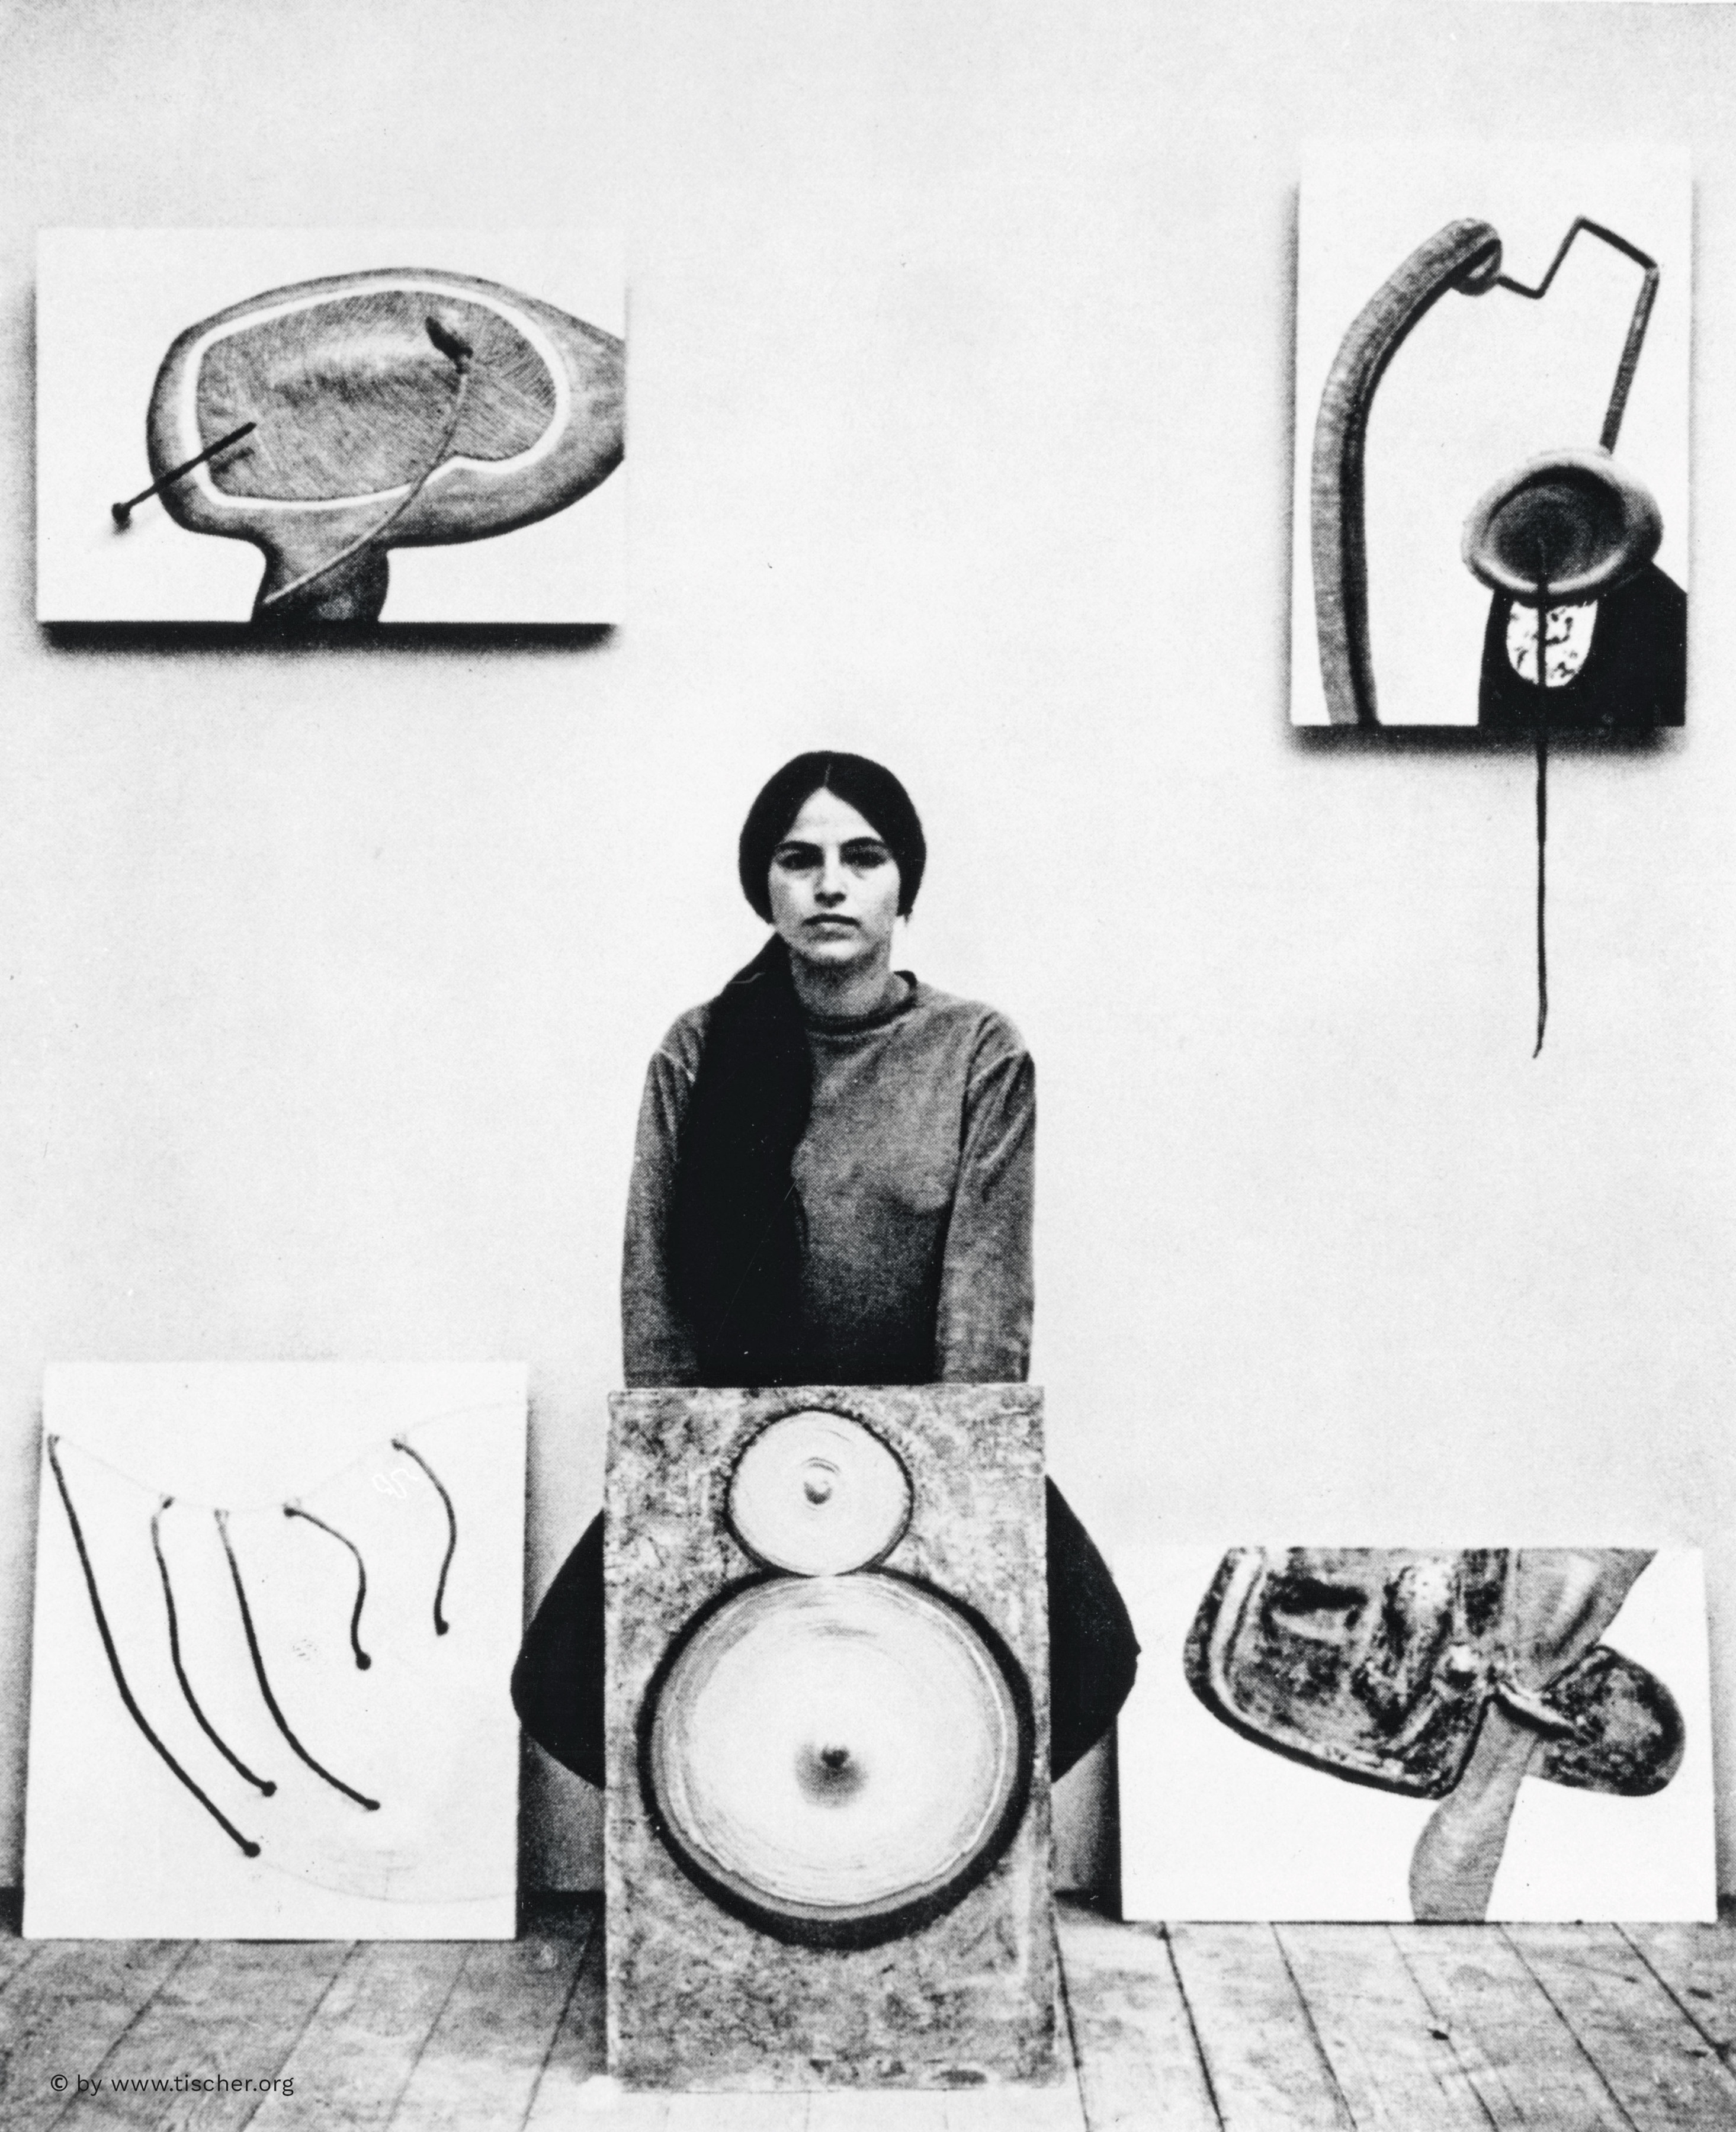 [FIG. 5]

Eva Hesse in 1965, photo by Manfred Tischer